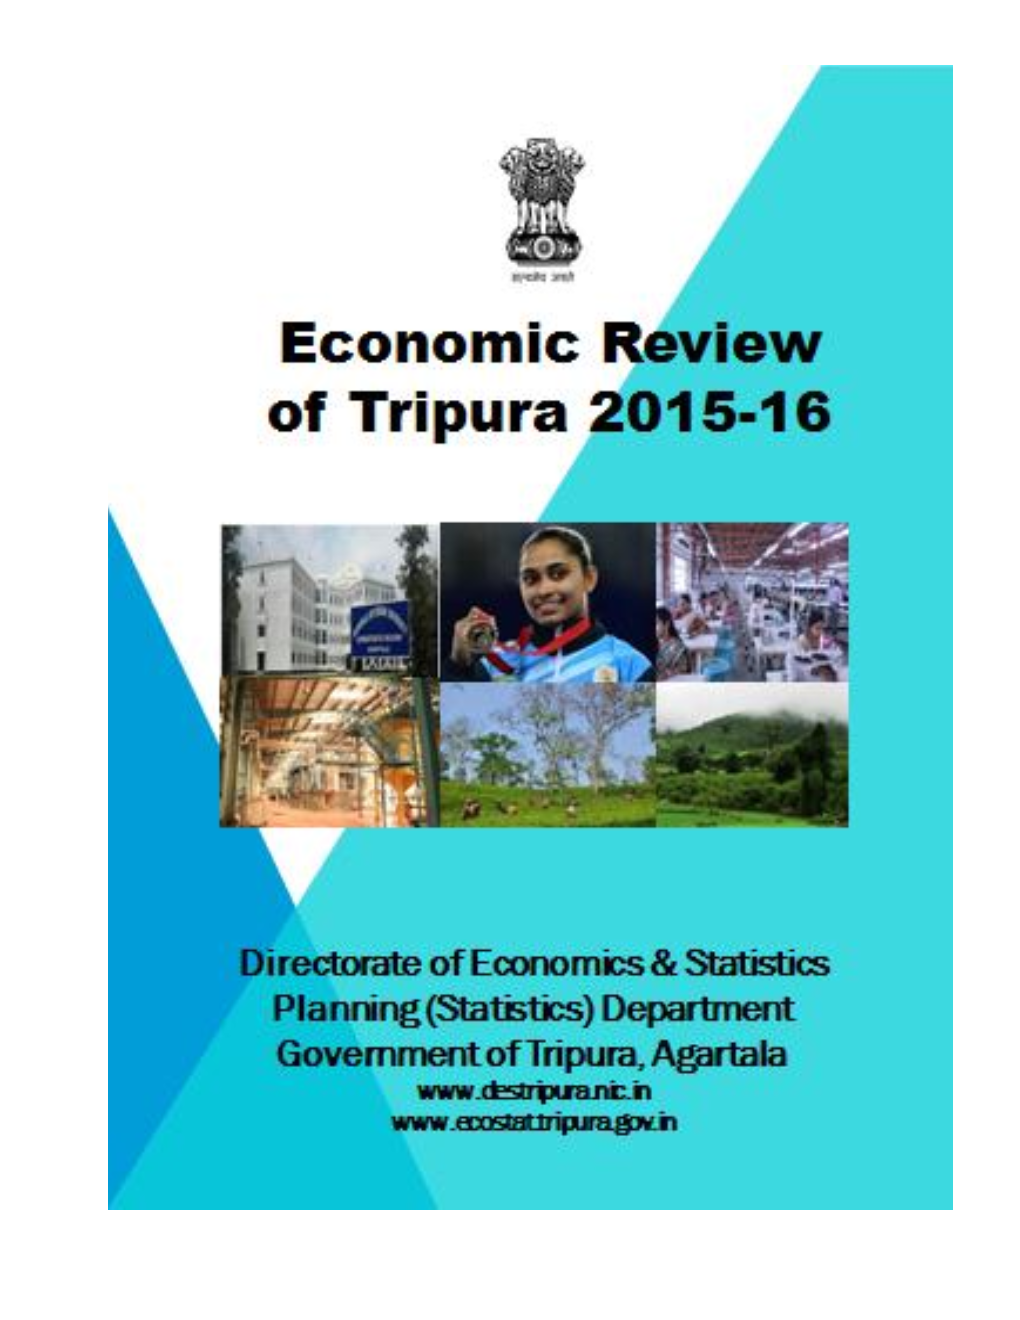 Economic Review of Tripura 2015-16.Pdf